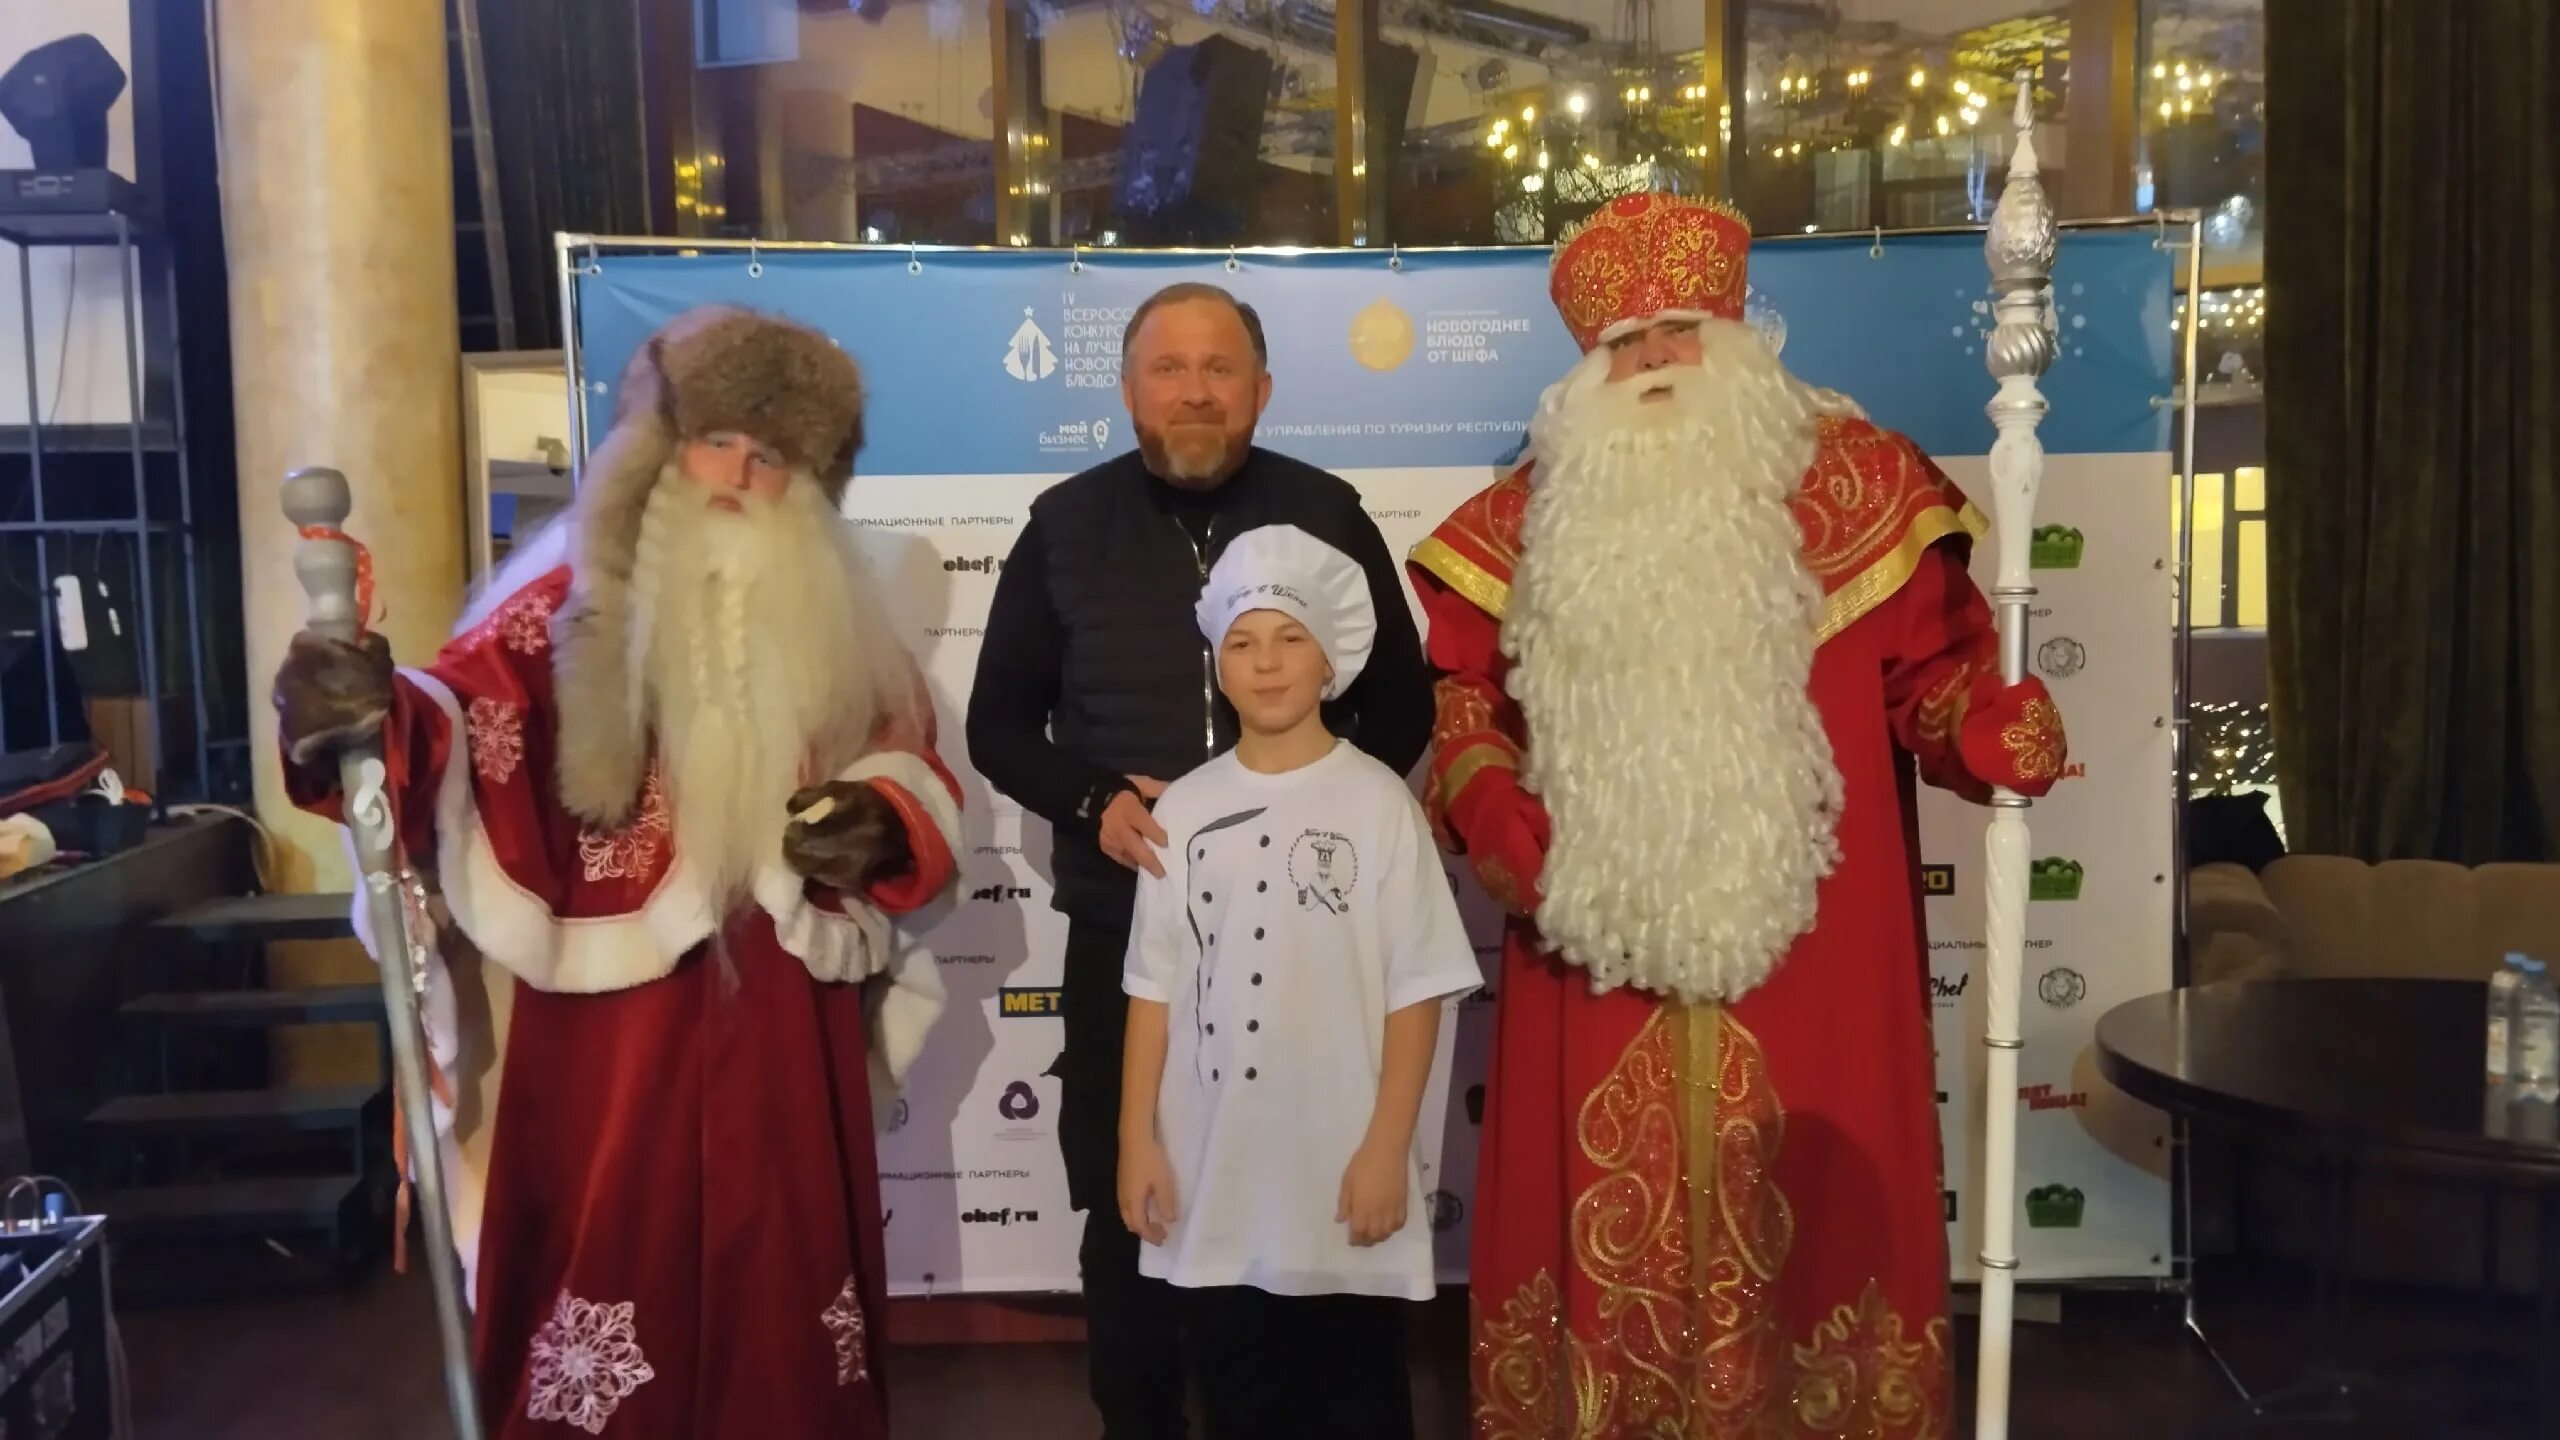 Дед мороз встречается с гостями которые приехали. Дед Мороз в России. Российский дед Мороз. Дед Мороз из Великого Устюга.